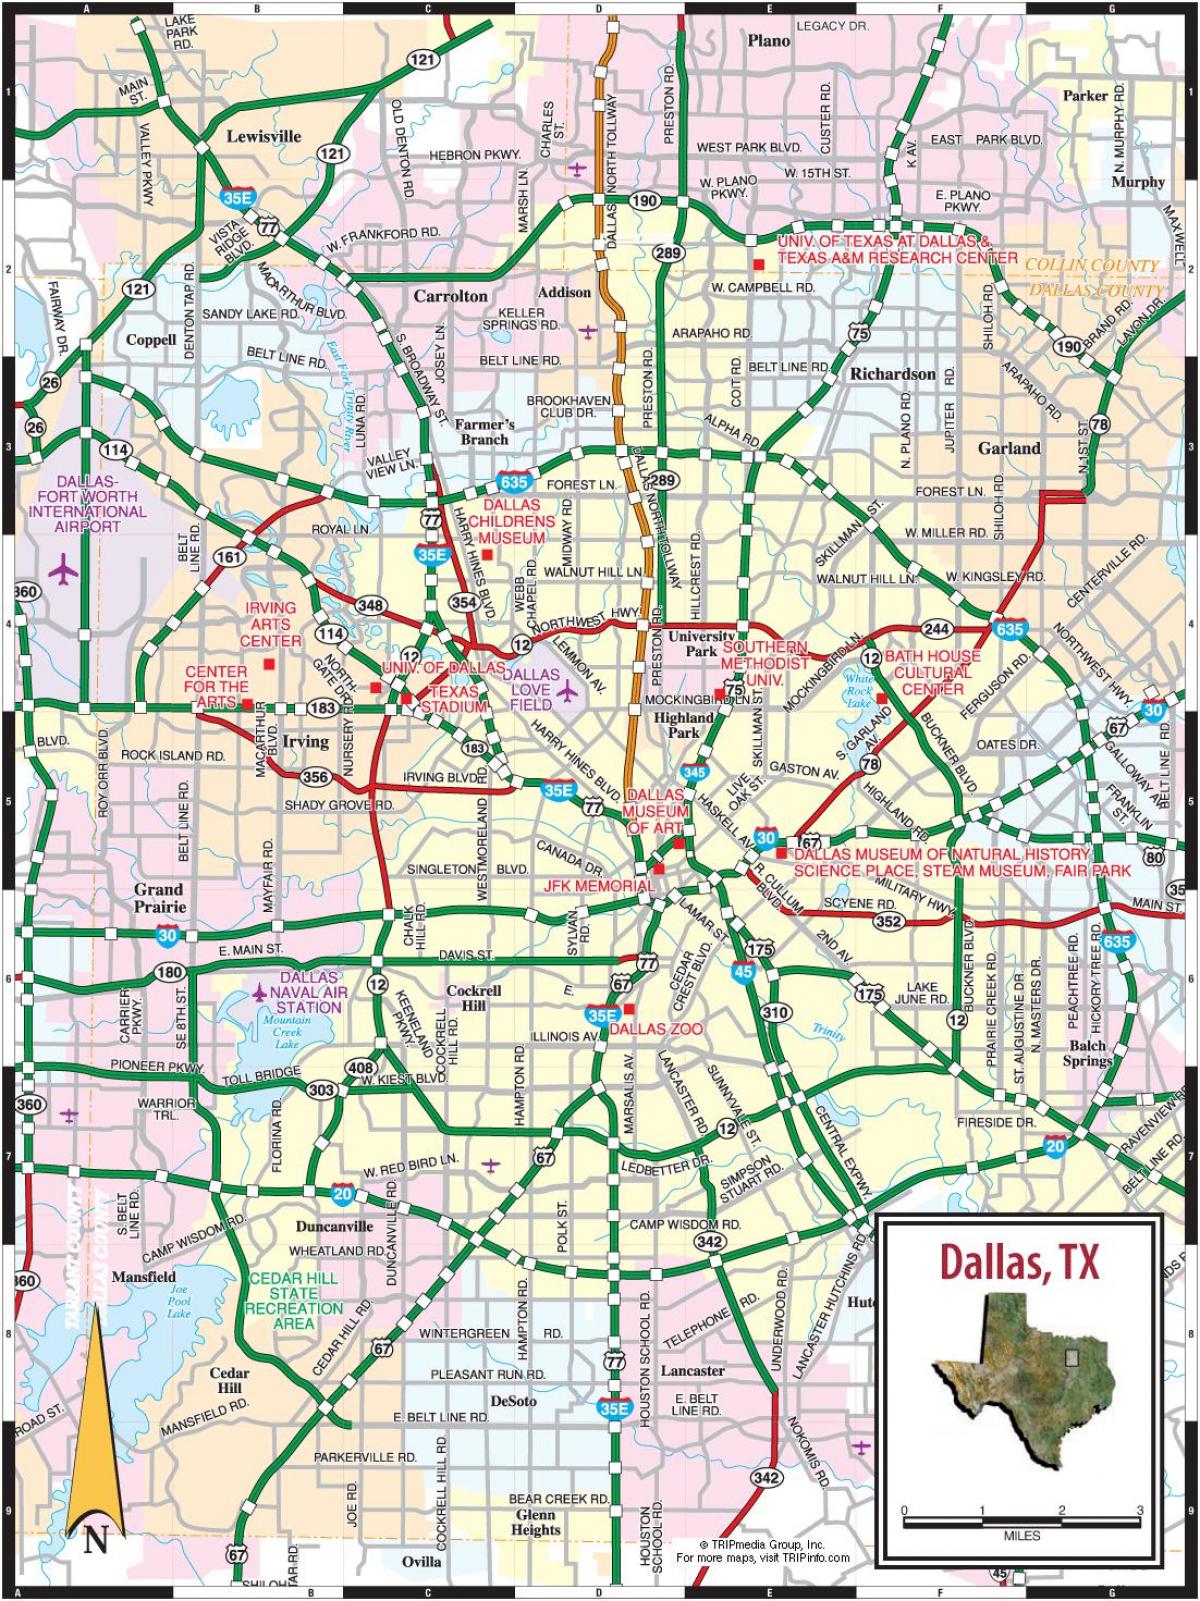 Plan des routes de Dallas